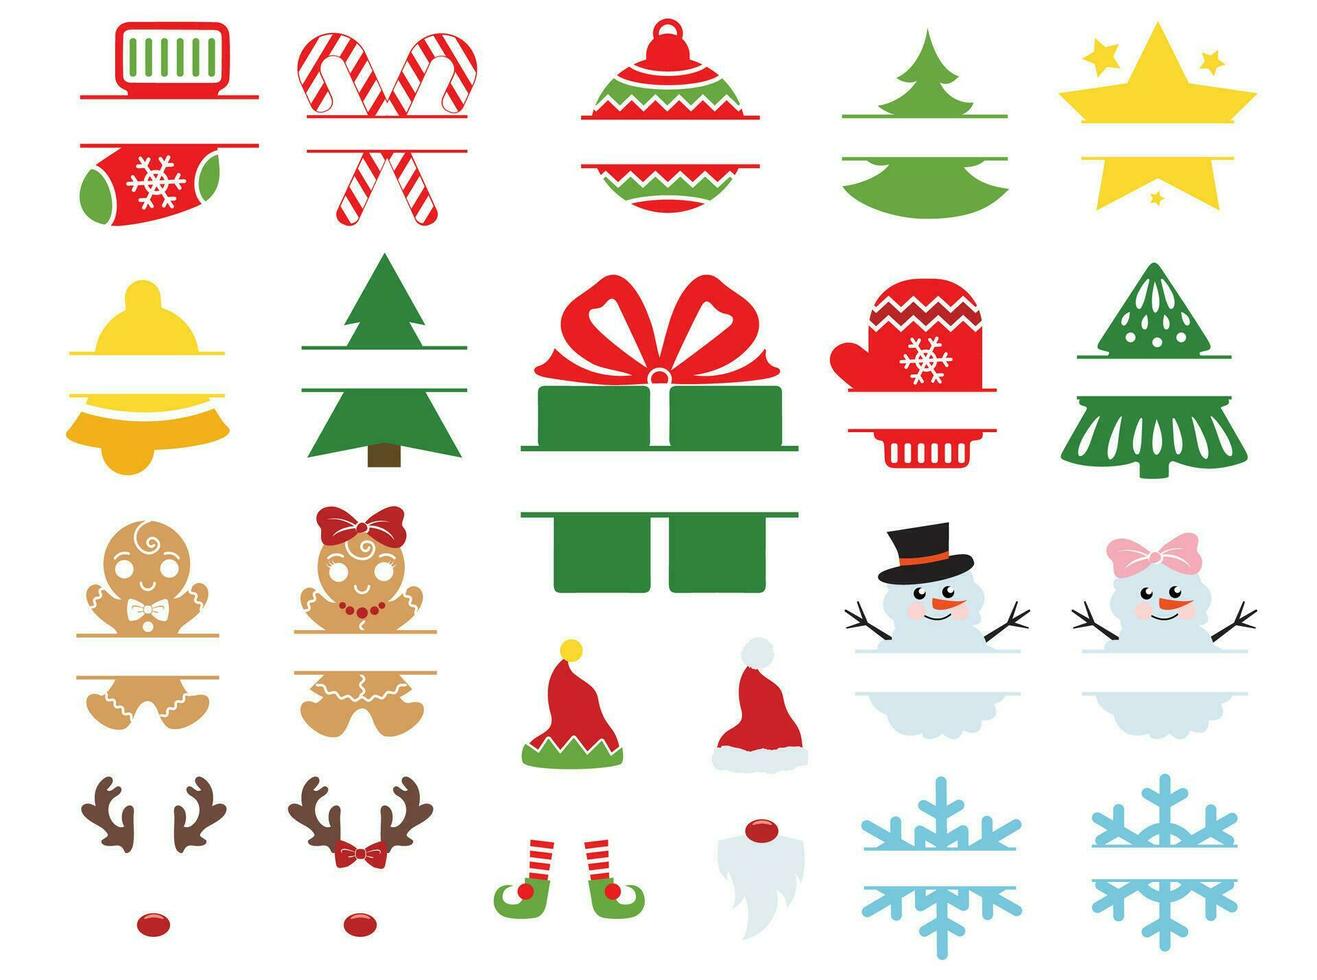 Kerstmis kaders vector illustratie met symbolen van kerstmis. kinderen Kerstmis ontwerp geïsoleerd mooi zo voor Kerstmis groeten kaarten, poster, afdrukken, sticker, uitnodigingen, baby t-shirt, mok, geschenken.